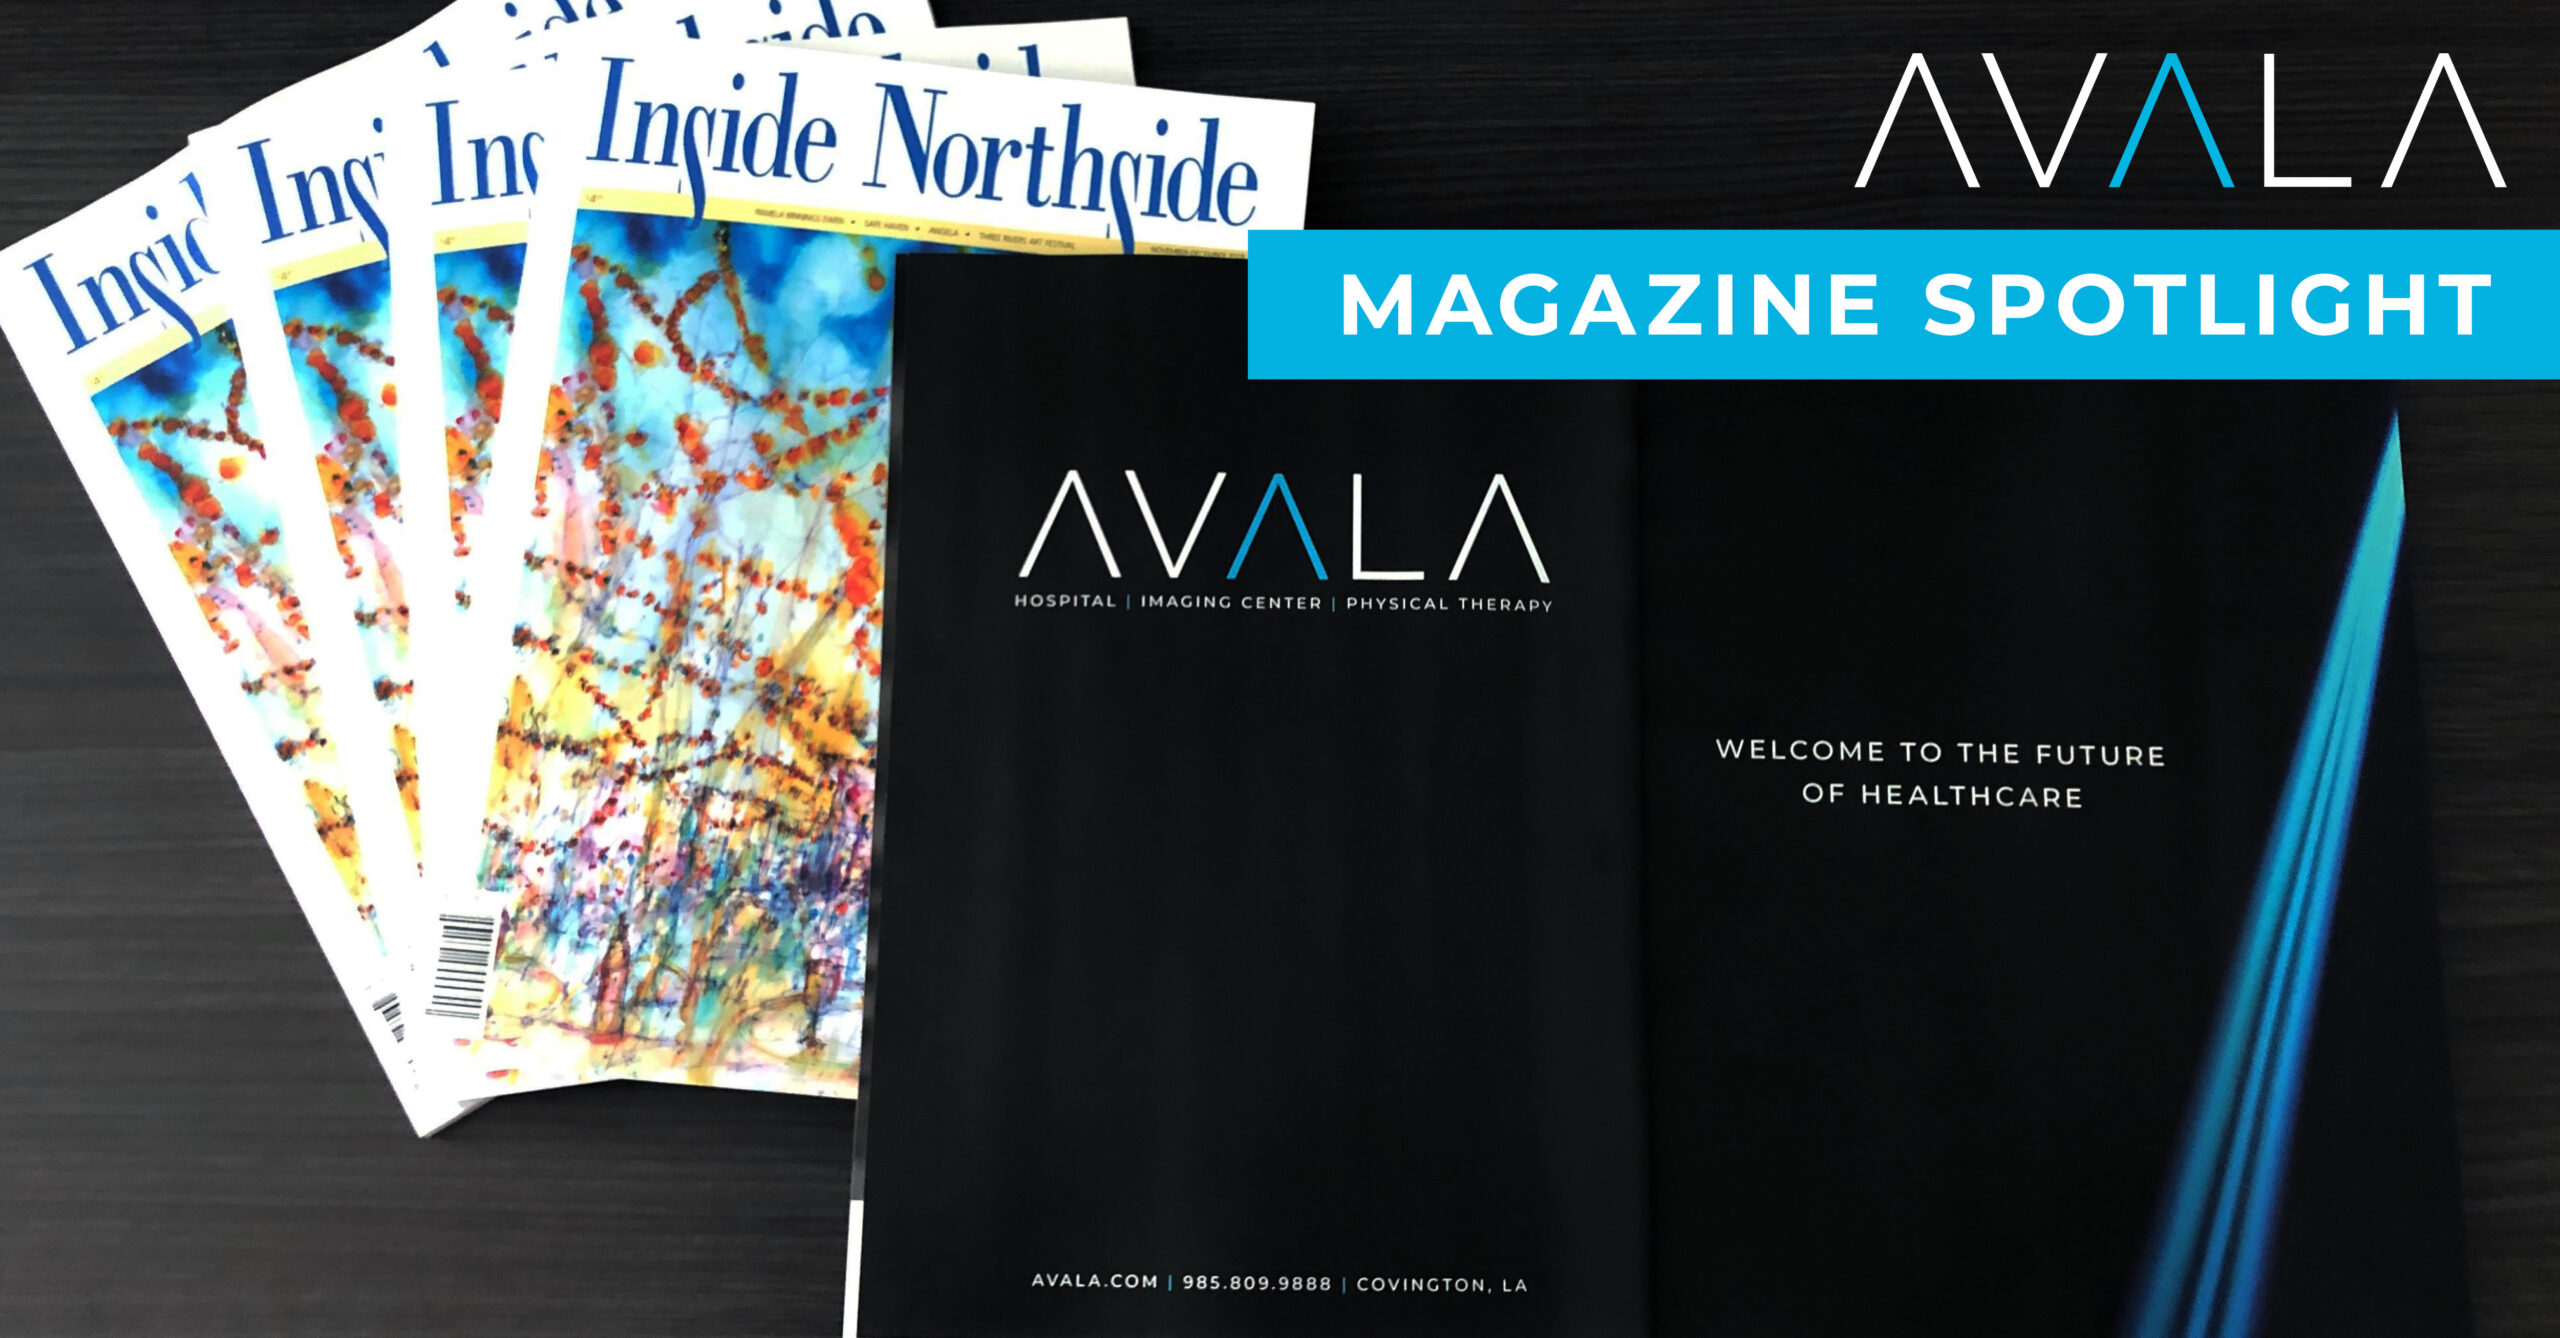 Avala Magazine Ad in Inside Northside Magazine